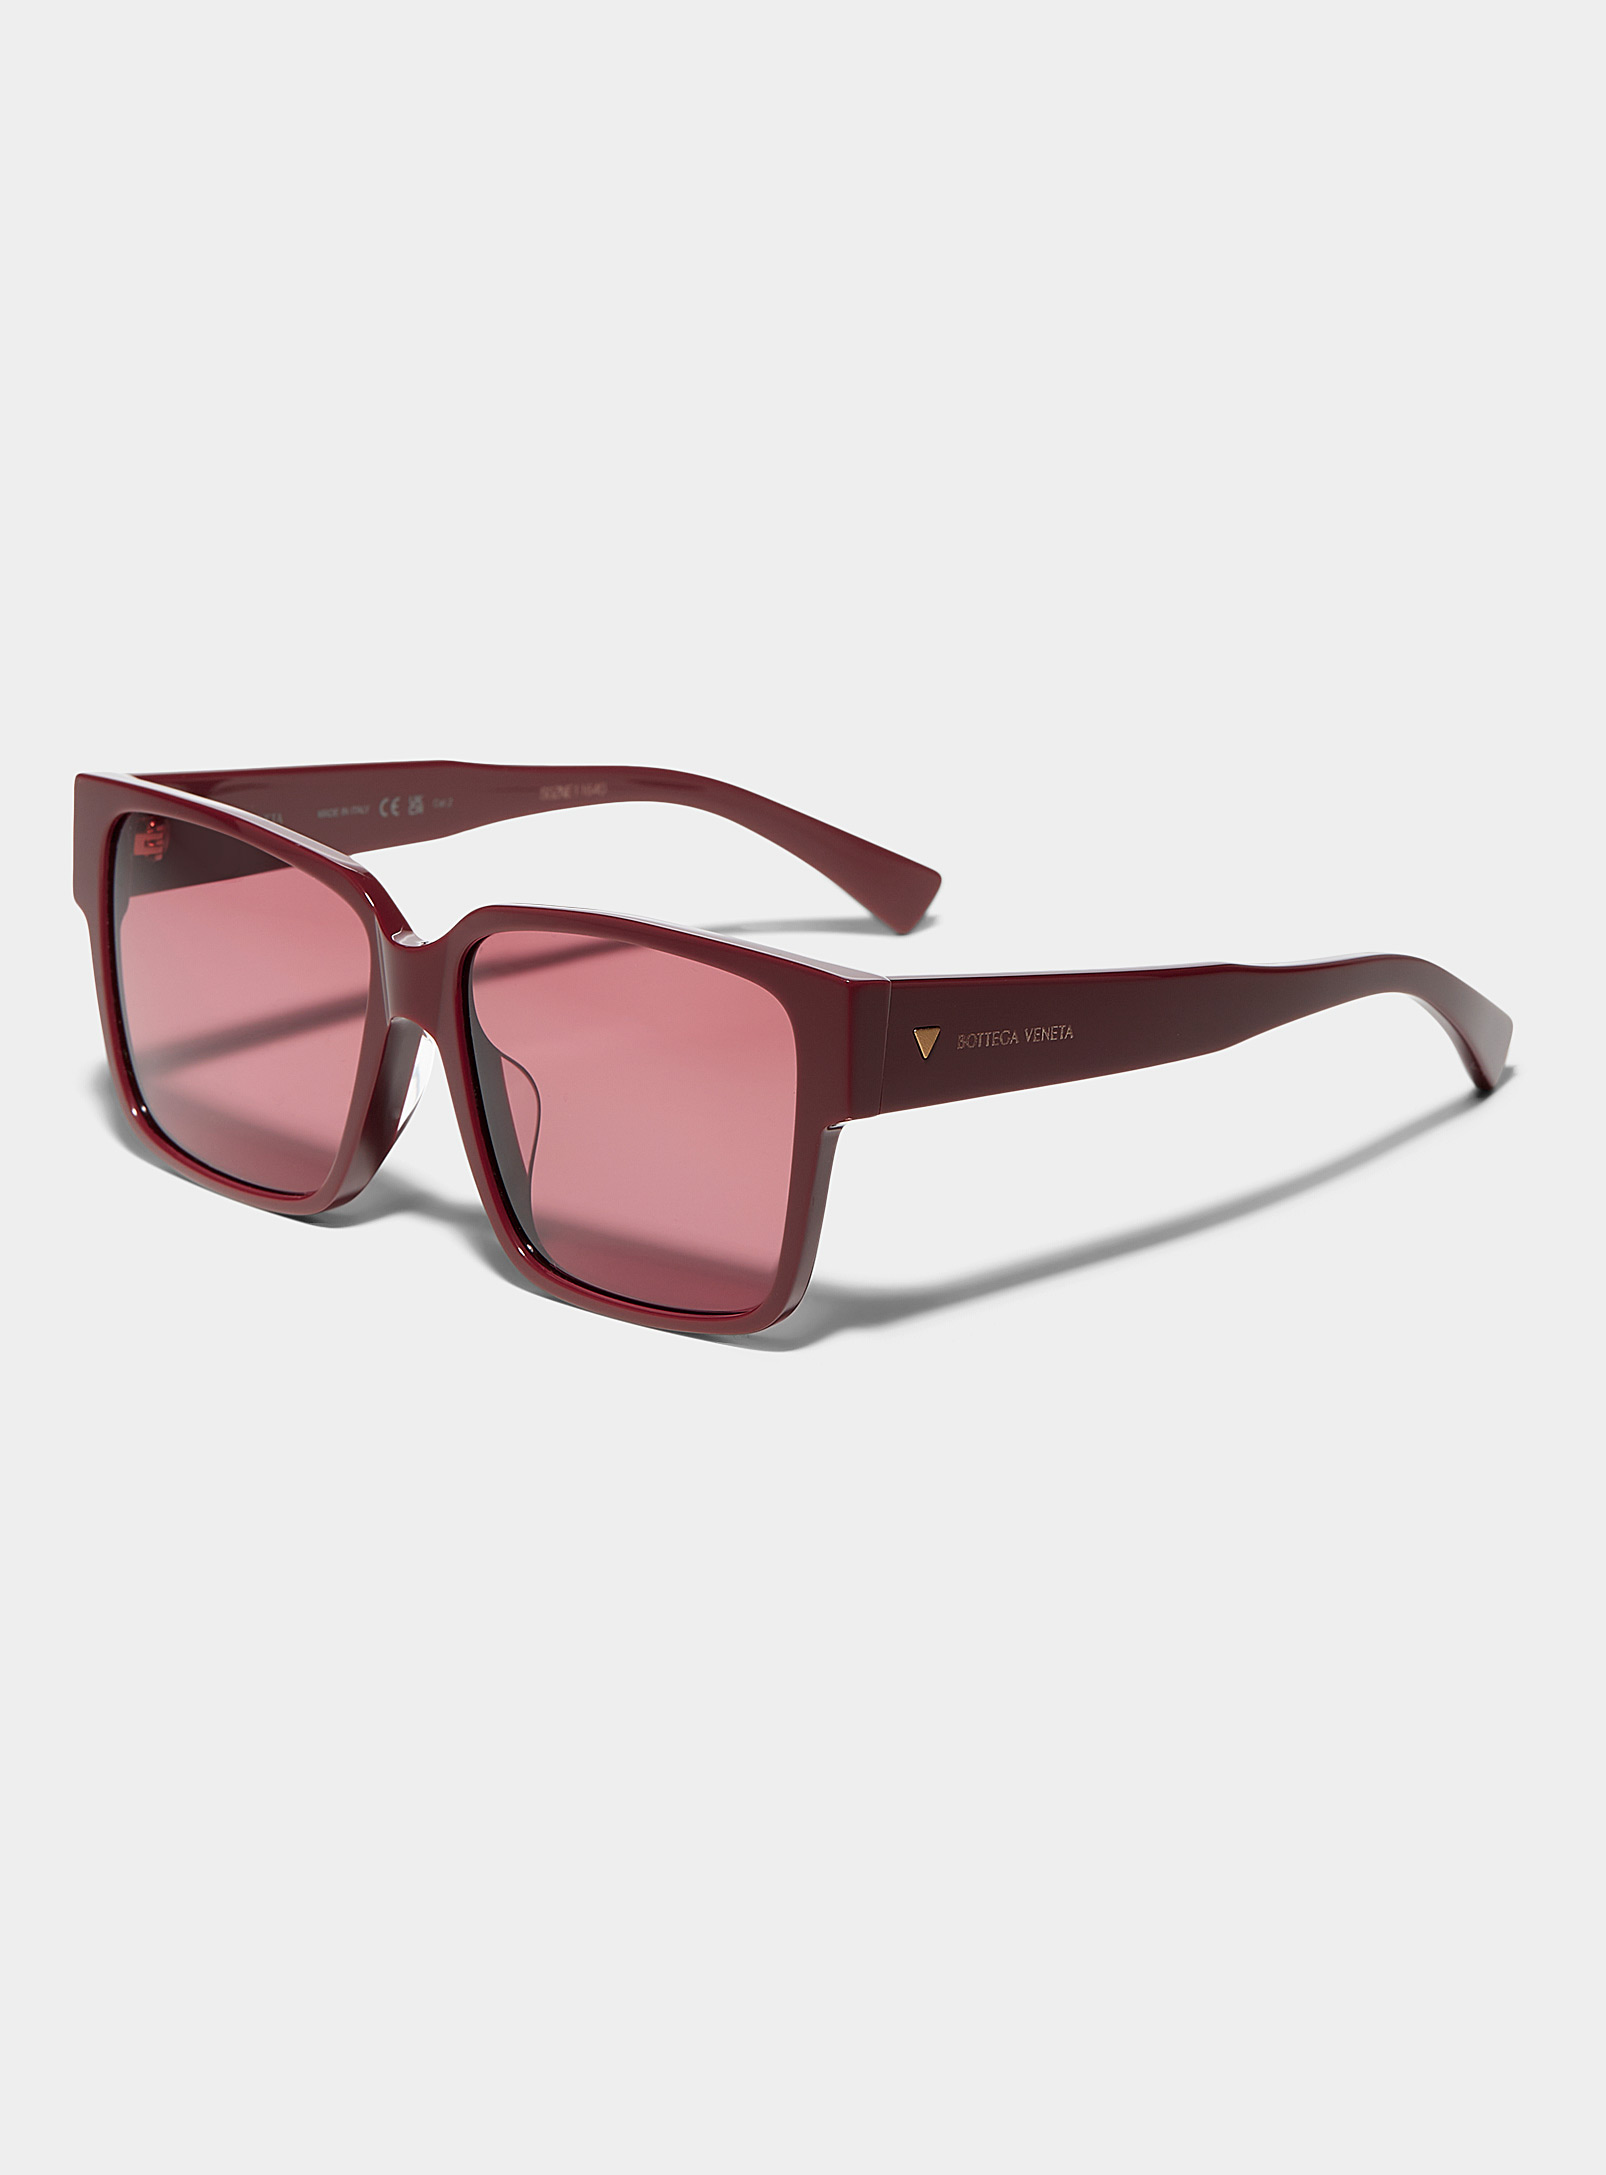 Bottega Veneta - Square burgundy sunglasses